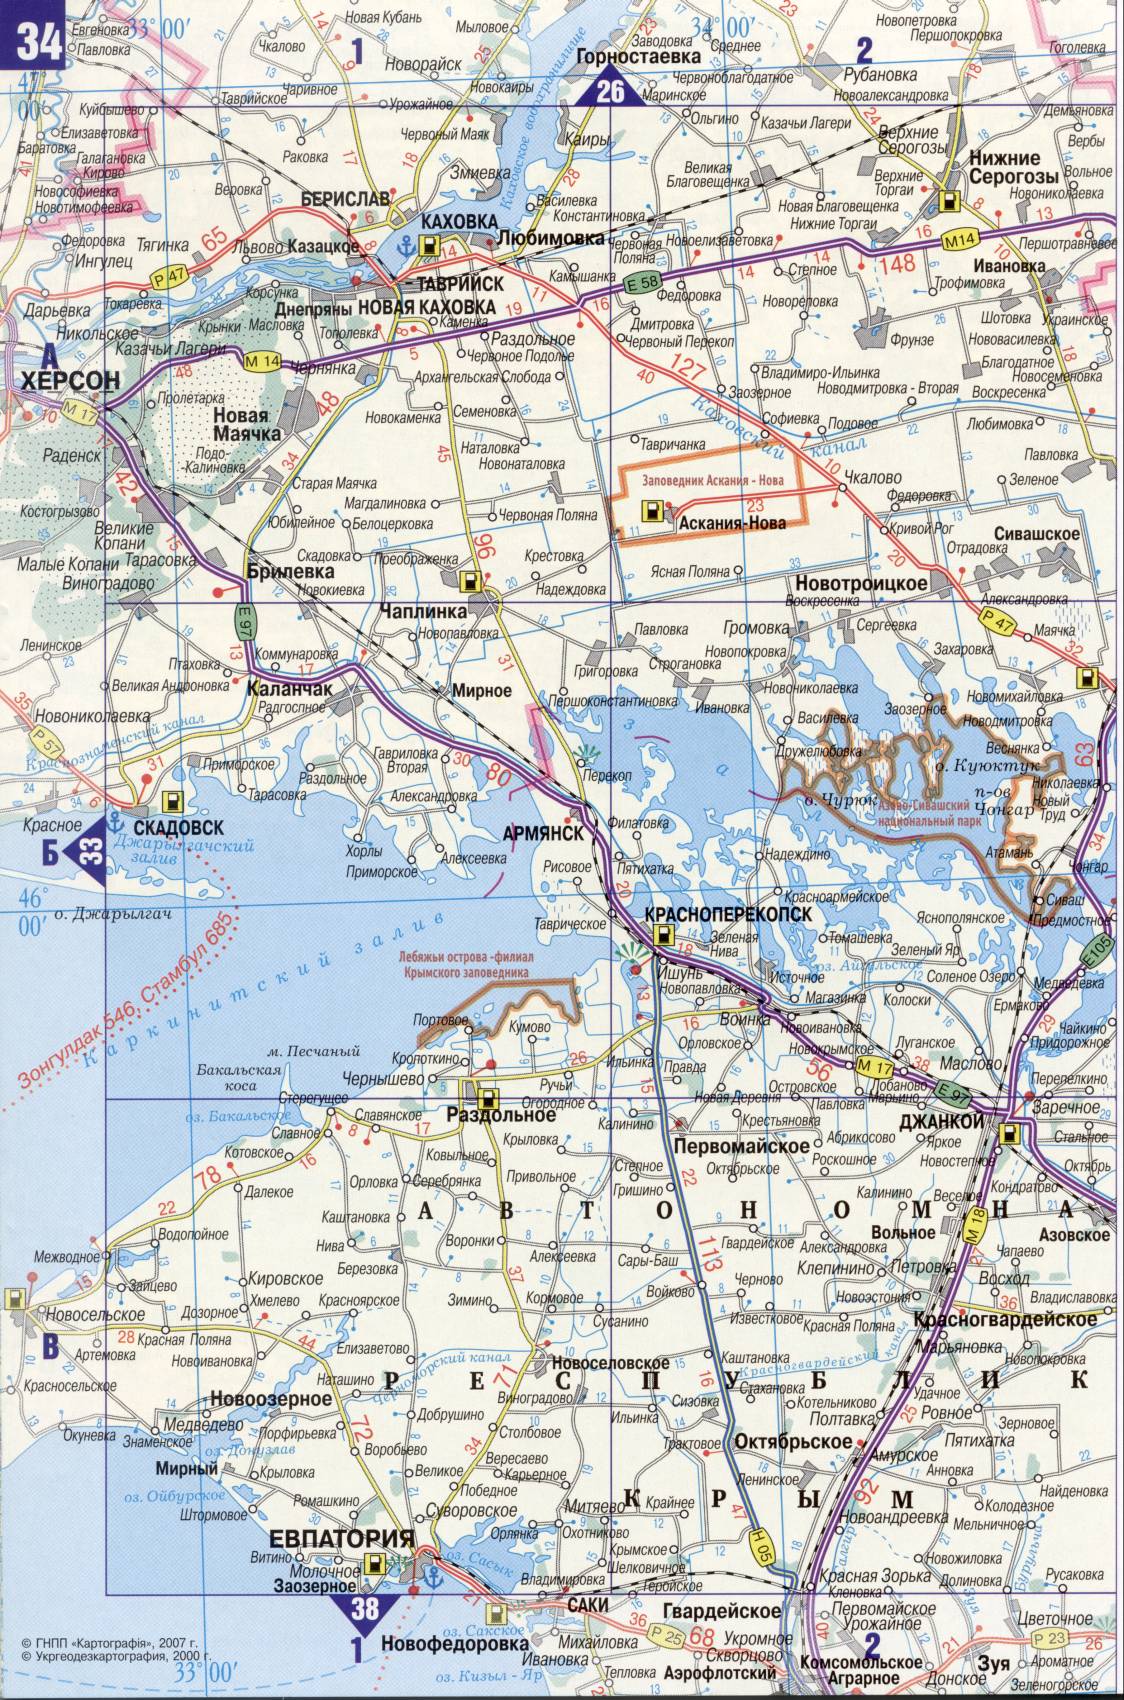 Карта Украины. Подробная карта дорог Украина из автомобильног атласа. скачать бесплатно, G3